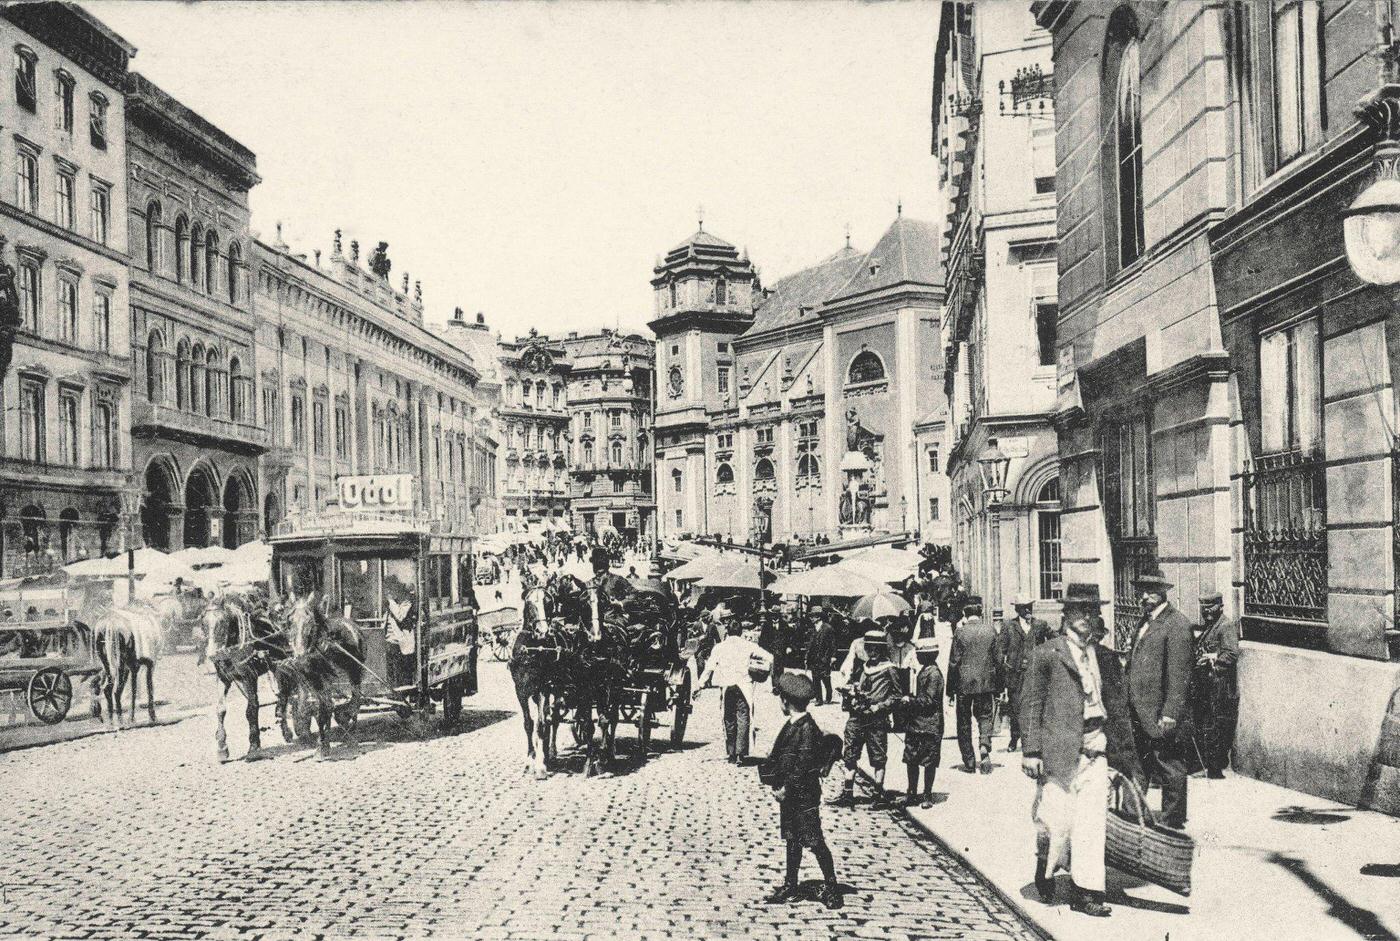 Freyung in Vienna, Inner City, Schottenstift (Scottis Abbey) in the background, Vienna, Austria, 1905